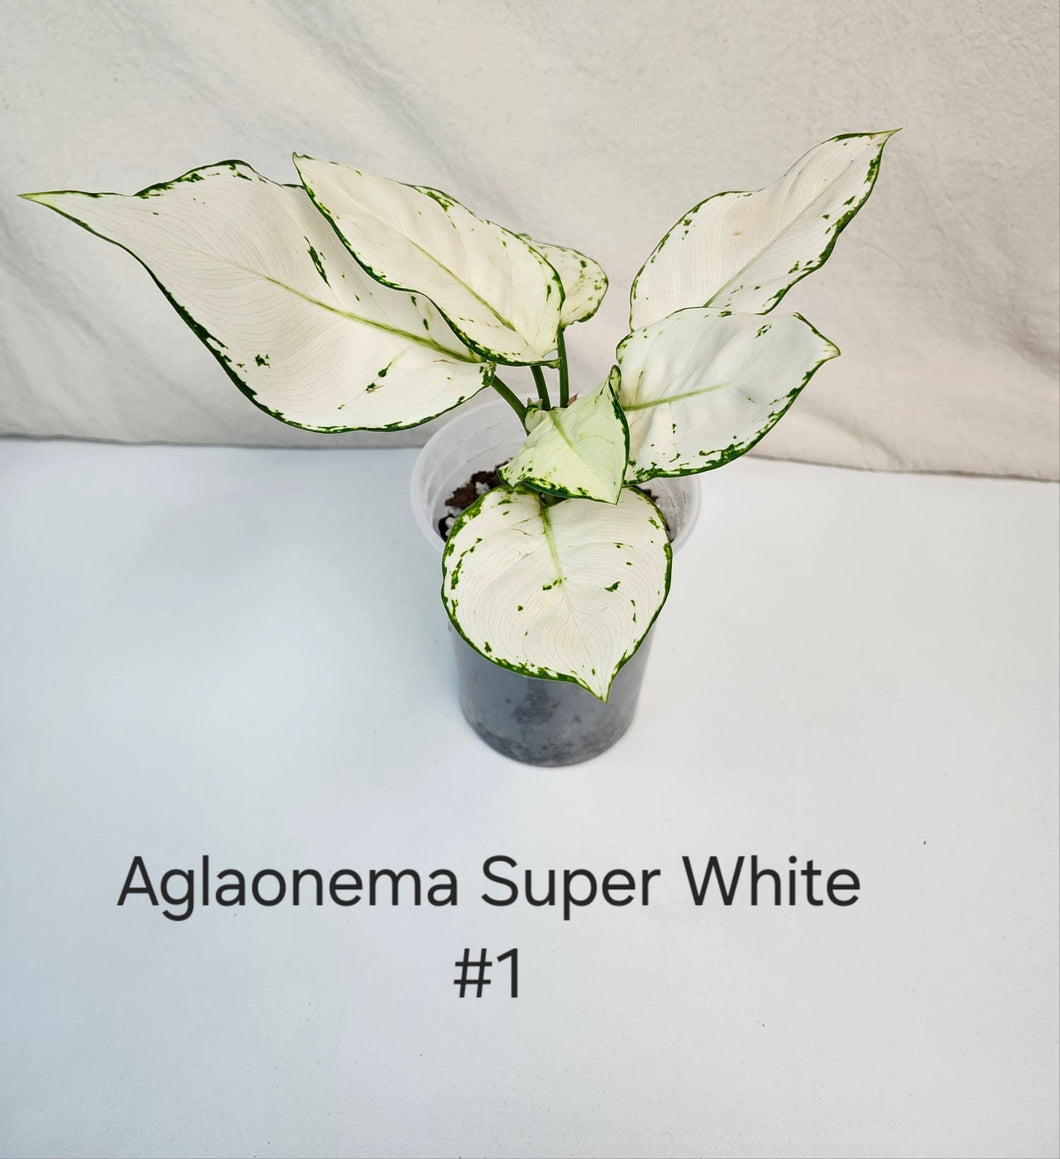 Aglaonema super white #1